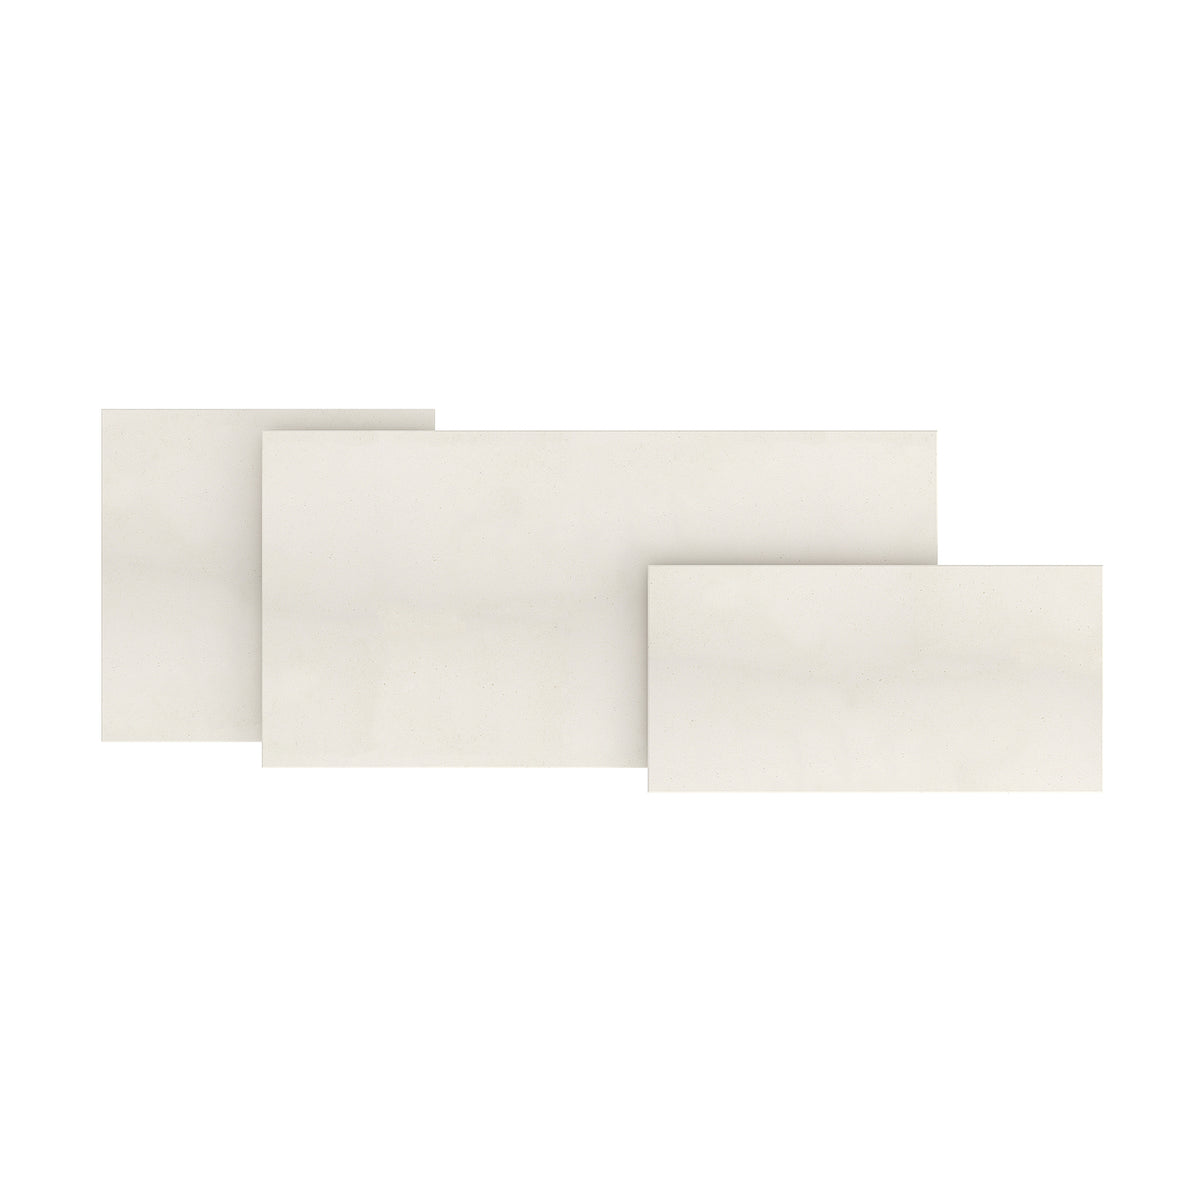 Porto White Limestone Main Product Slider View